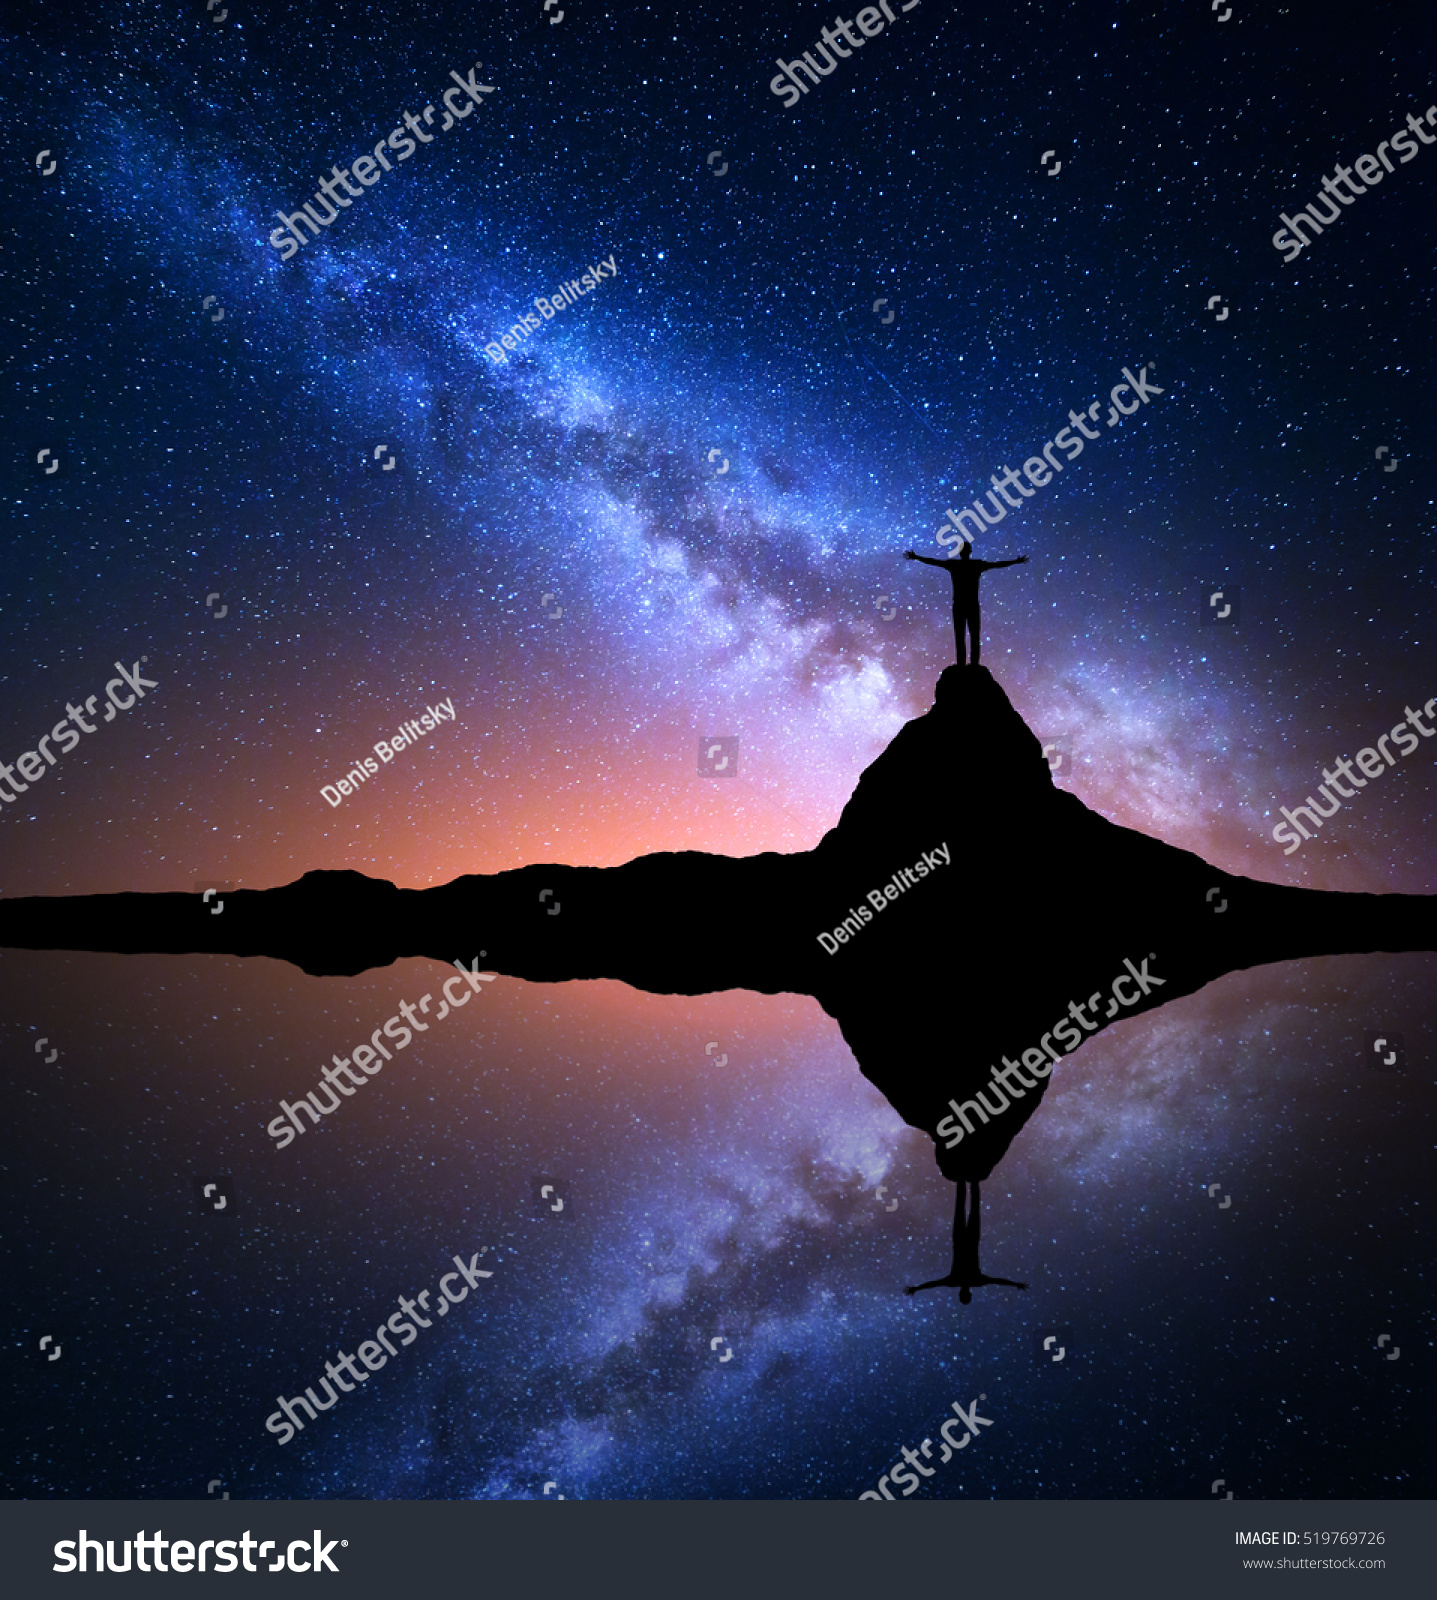 Milky Way Night Starry Sky Silhouette Stock Photo ...